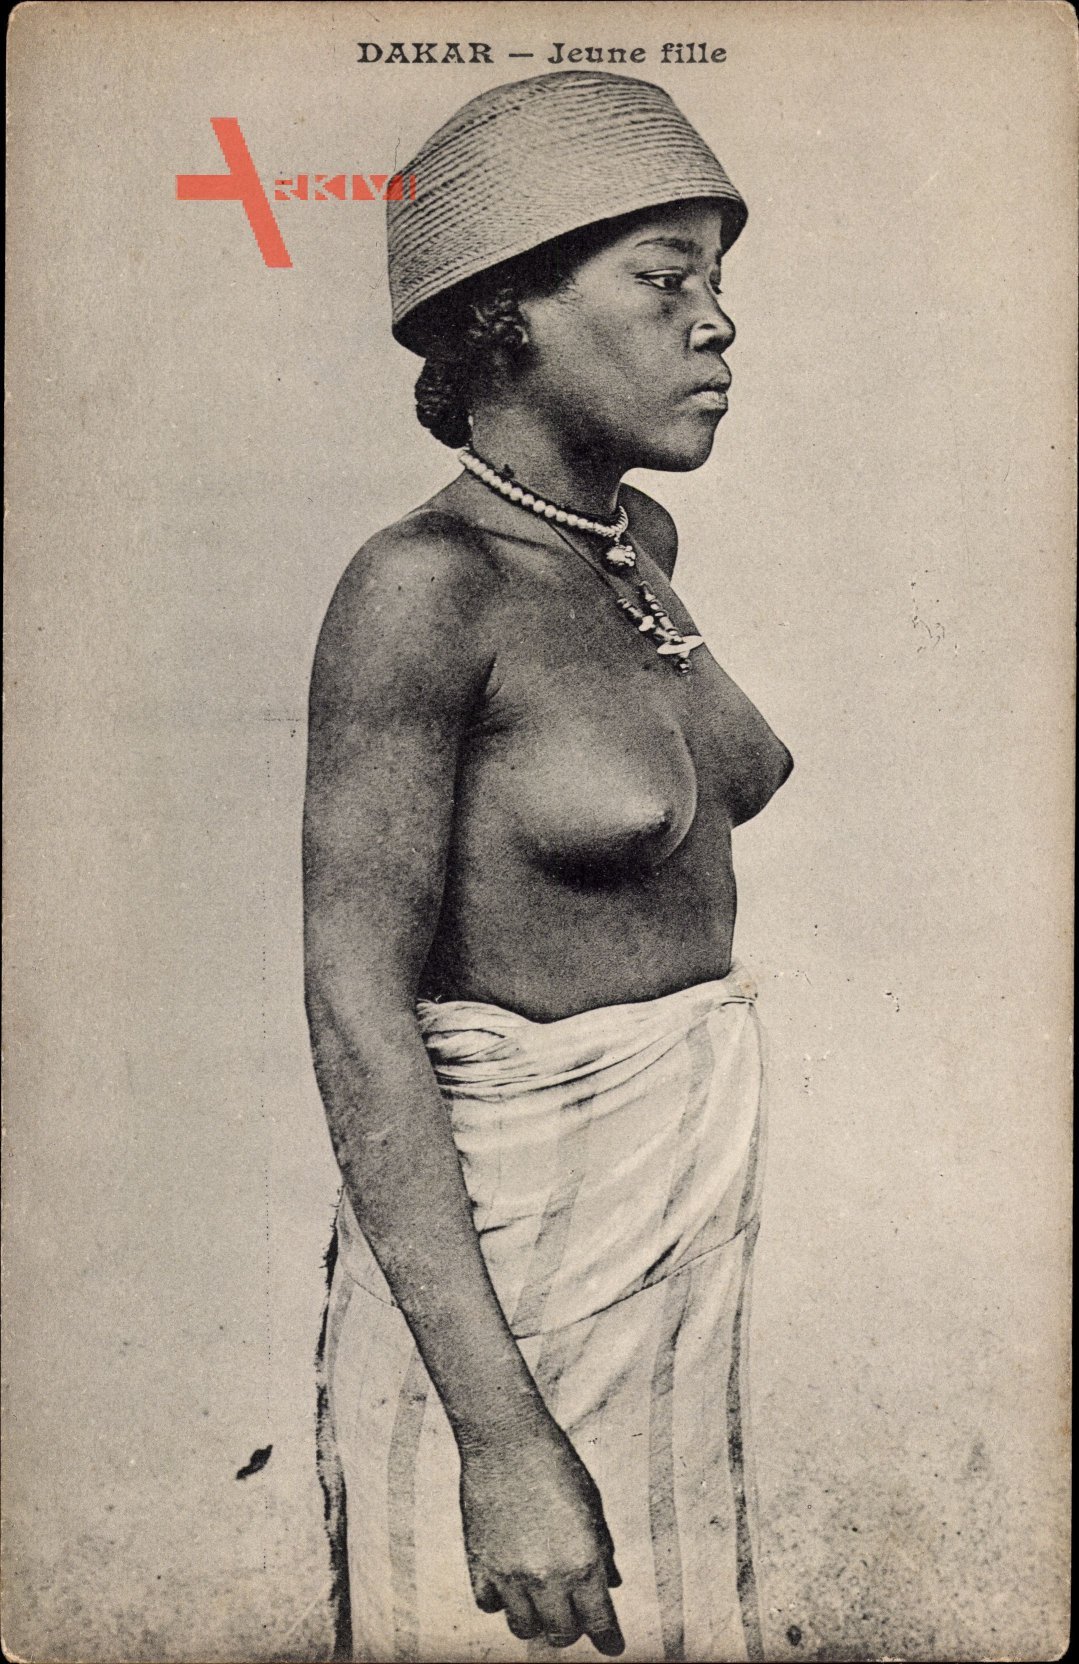 Dakar Senegal, Jeune fille, Portrait einer Frau mit entblößter Brust